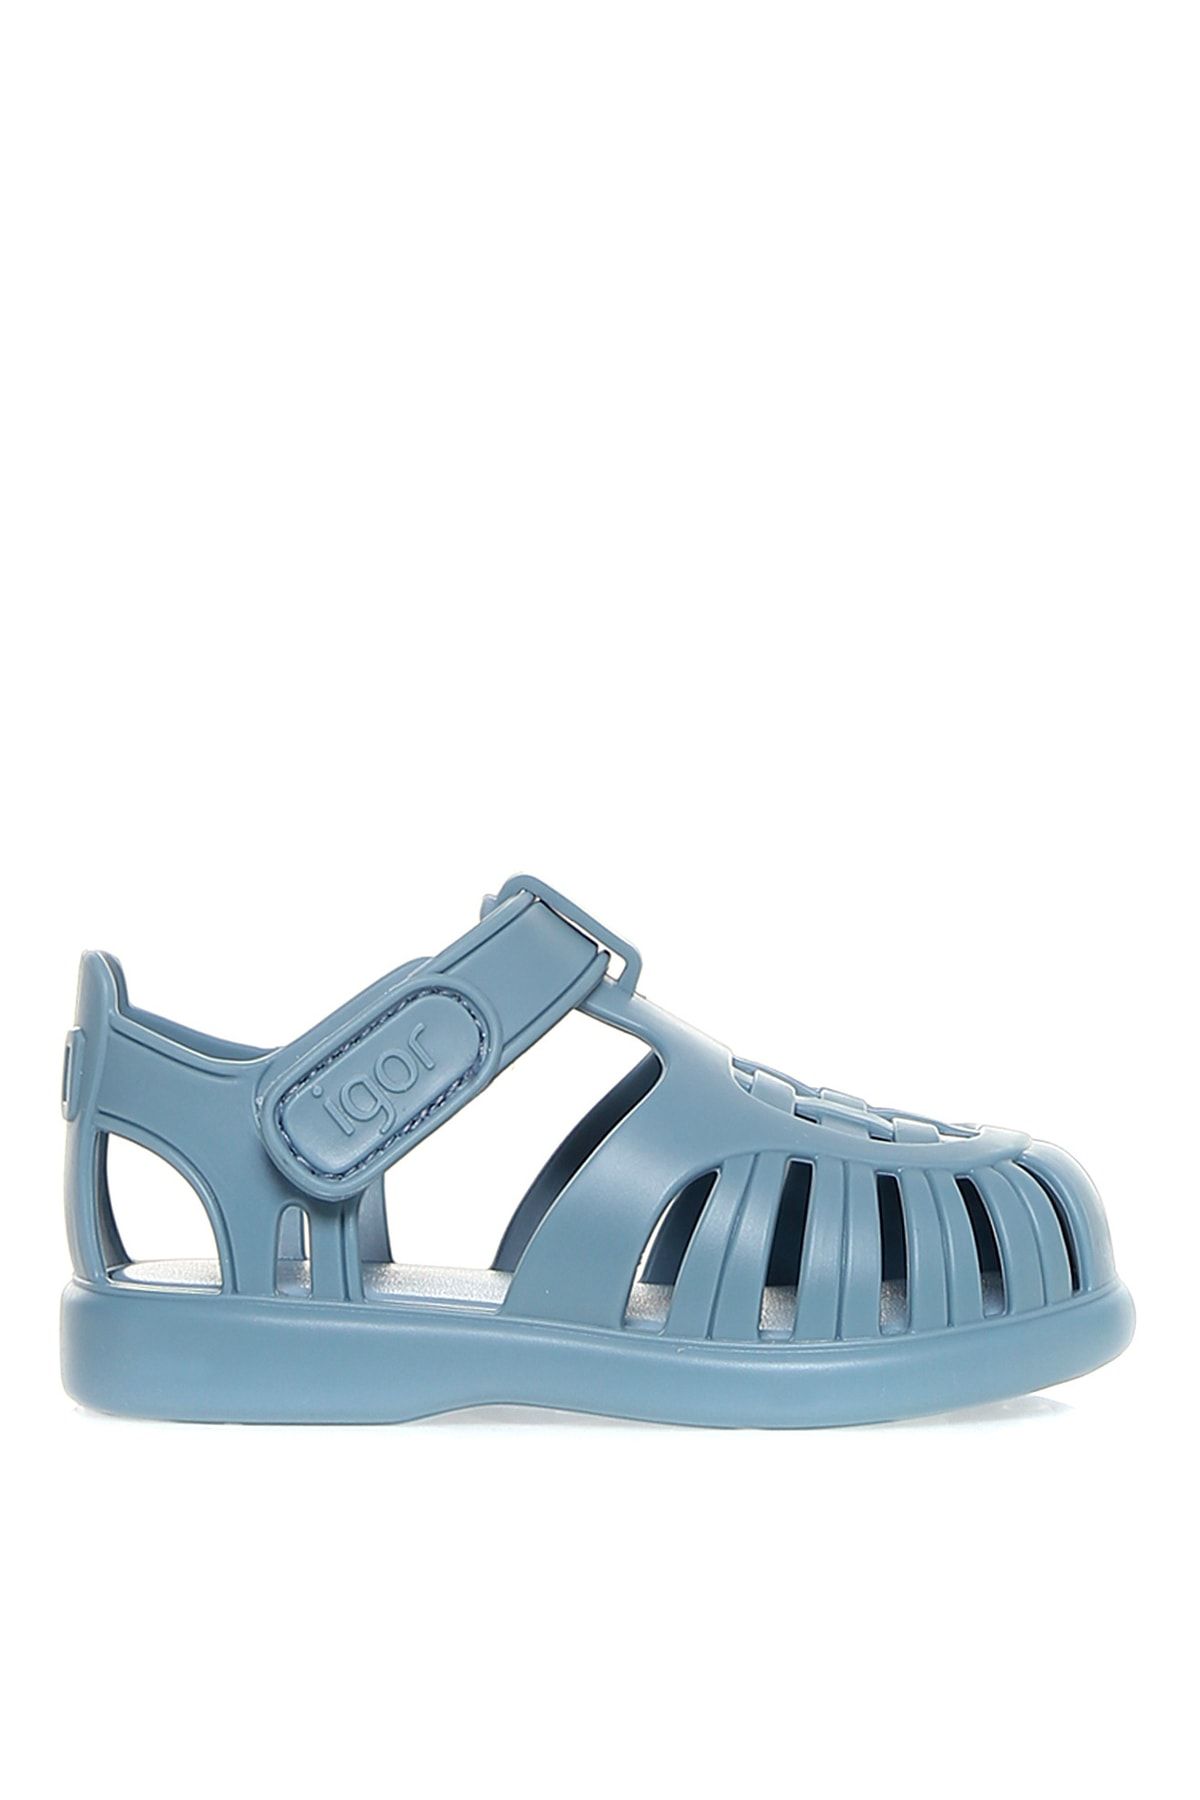 IGOR S10271 Tobby Solid Mavi Erkek Çocuk Sandalet